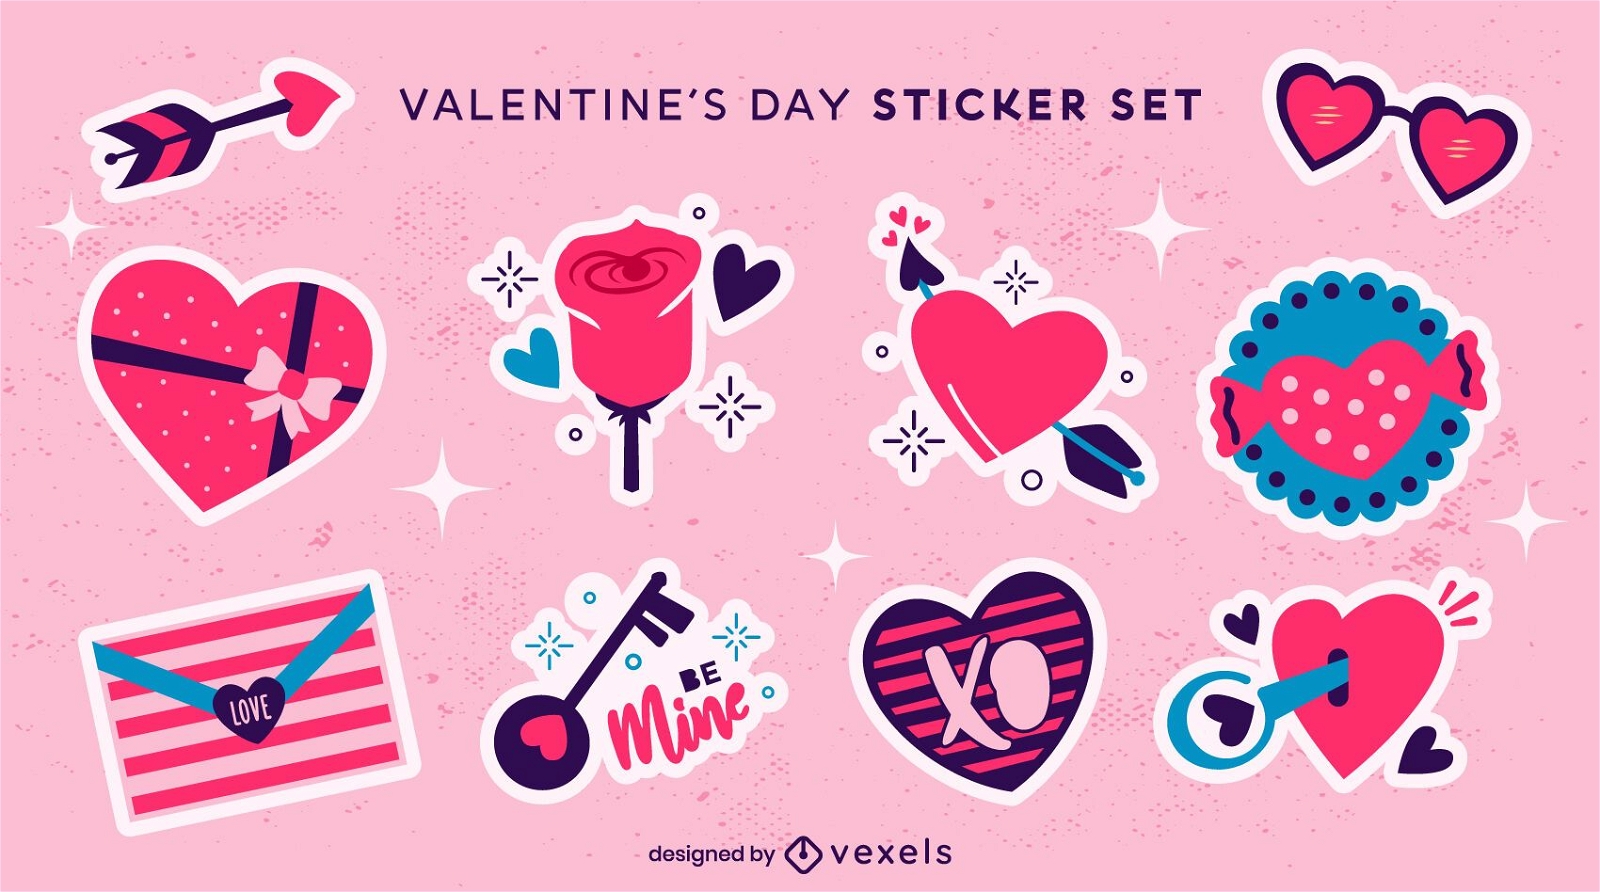 Valentine's day hearts sticket set